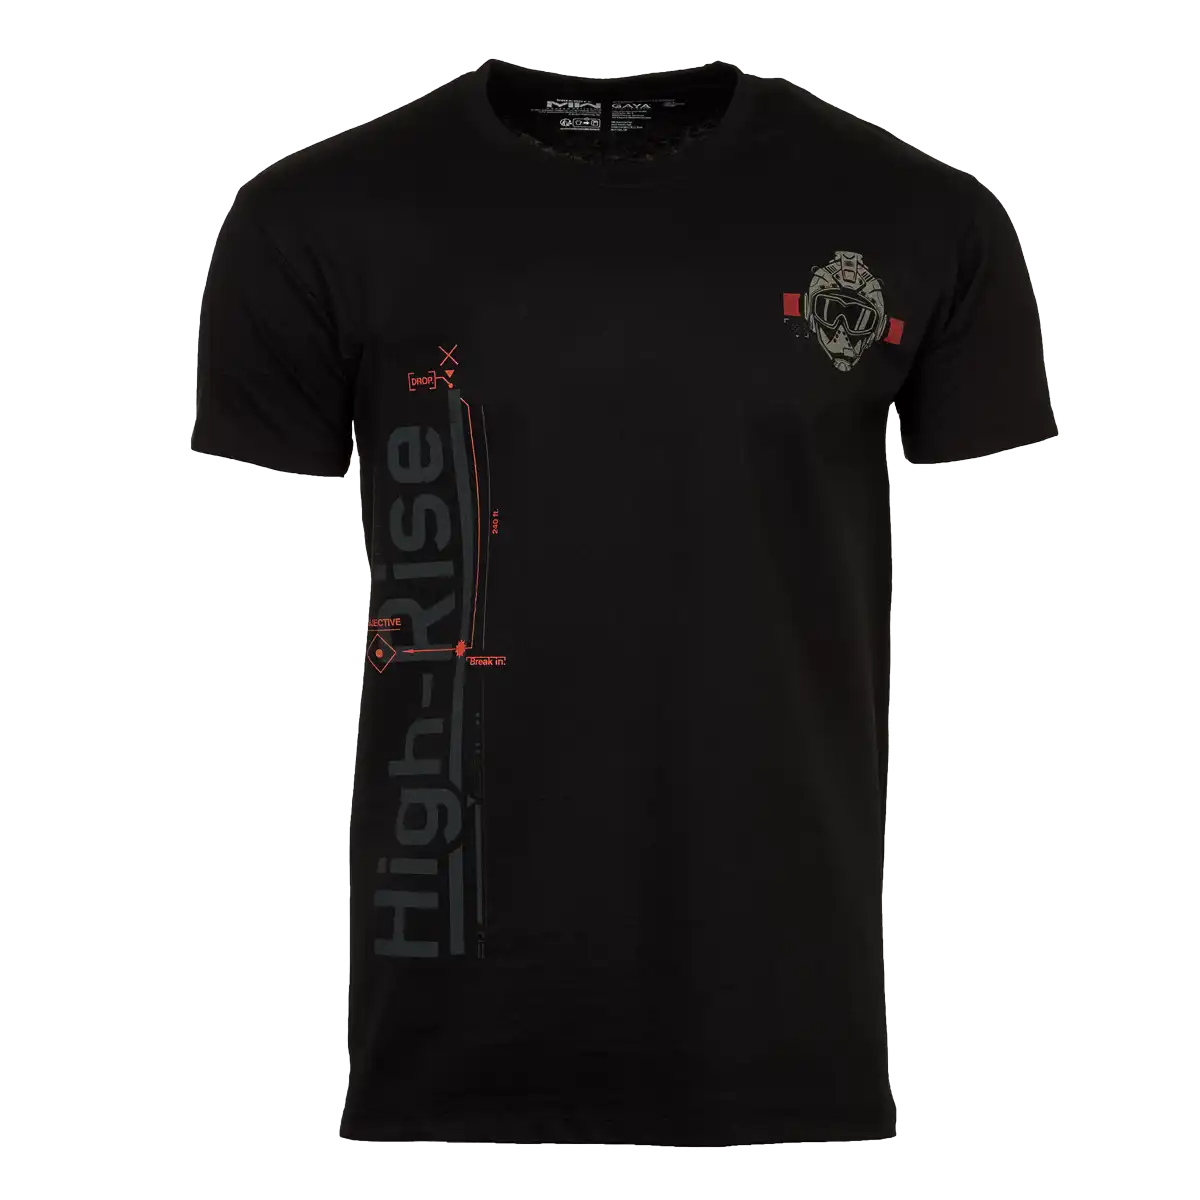 Call of Duty T-Shirt "High Rise" Black L